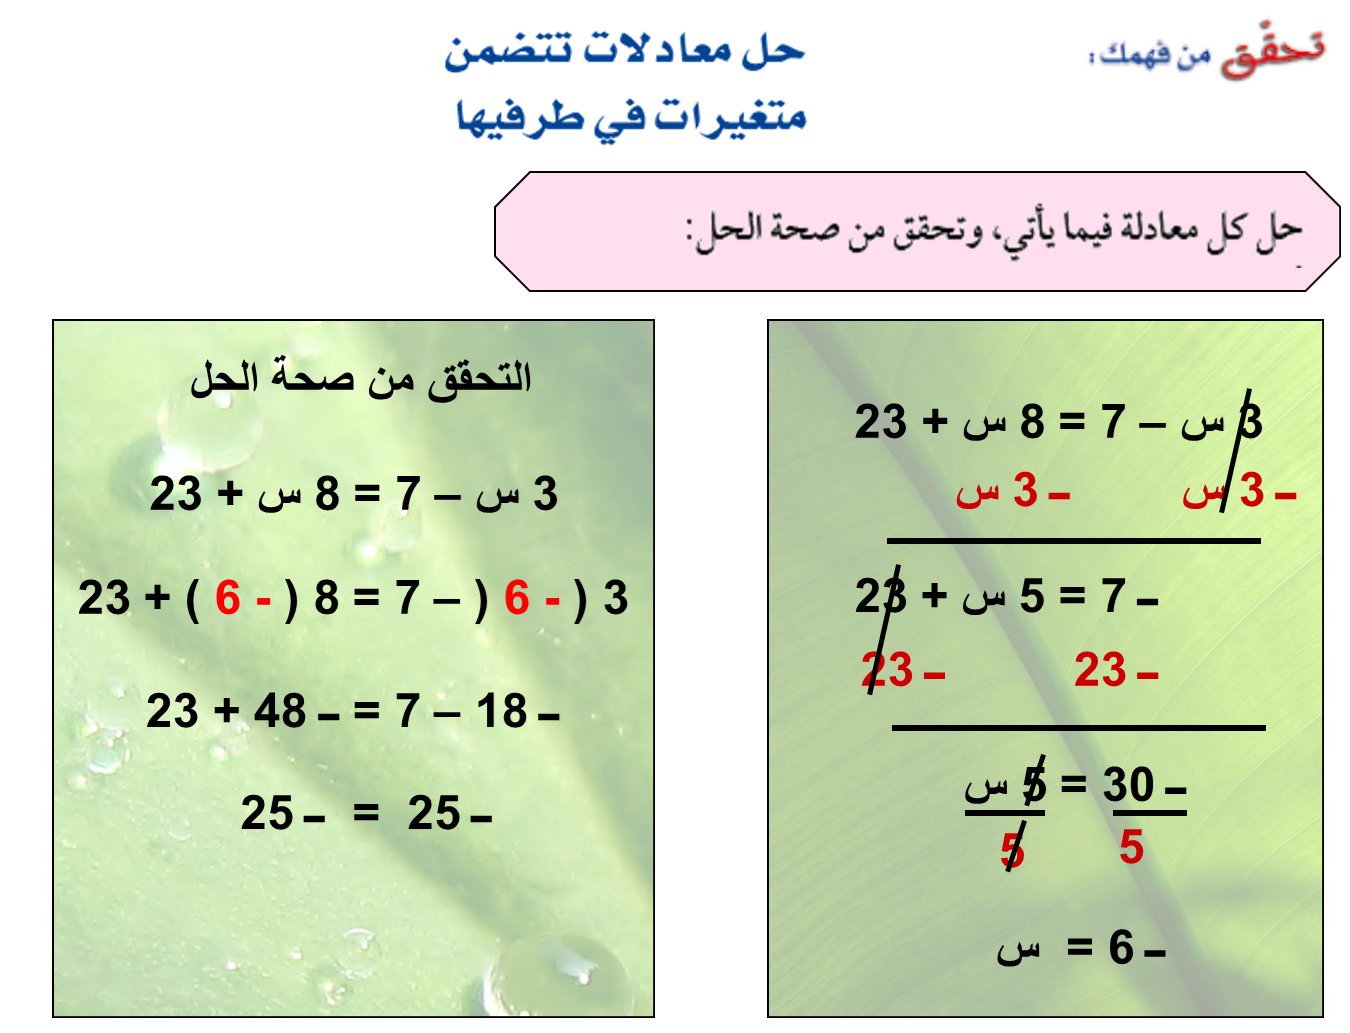 عرض بوربوينت حل معادلات تتضمن متغيرات في طرفيها ثاني متوسط